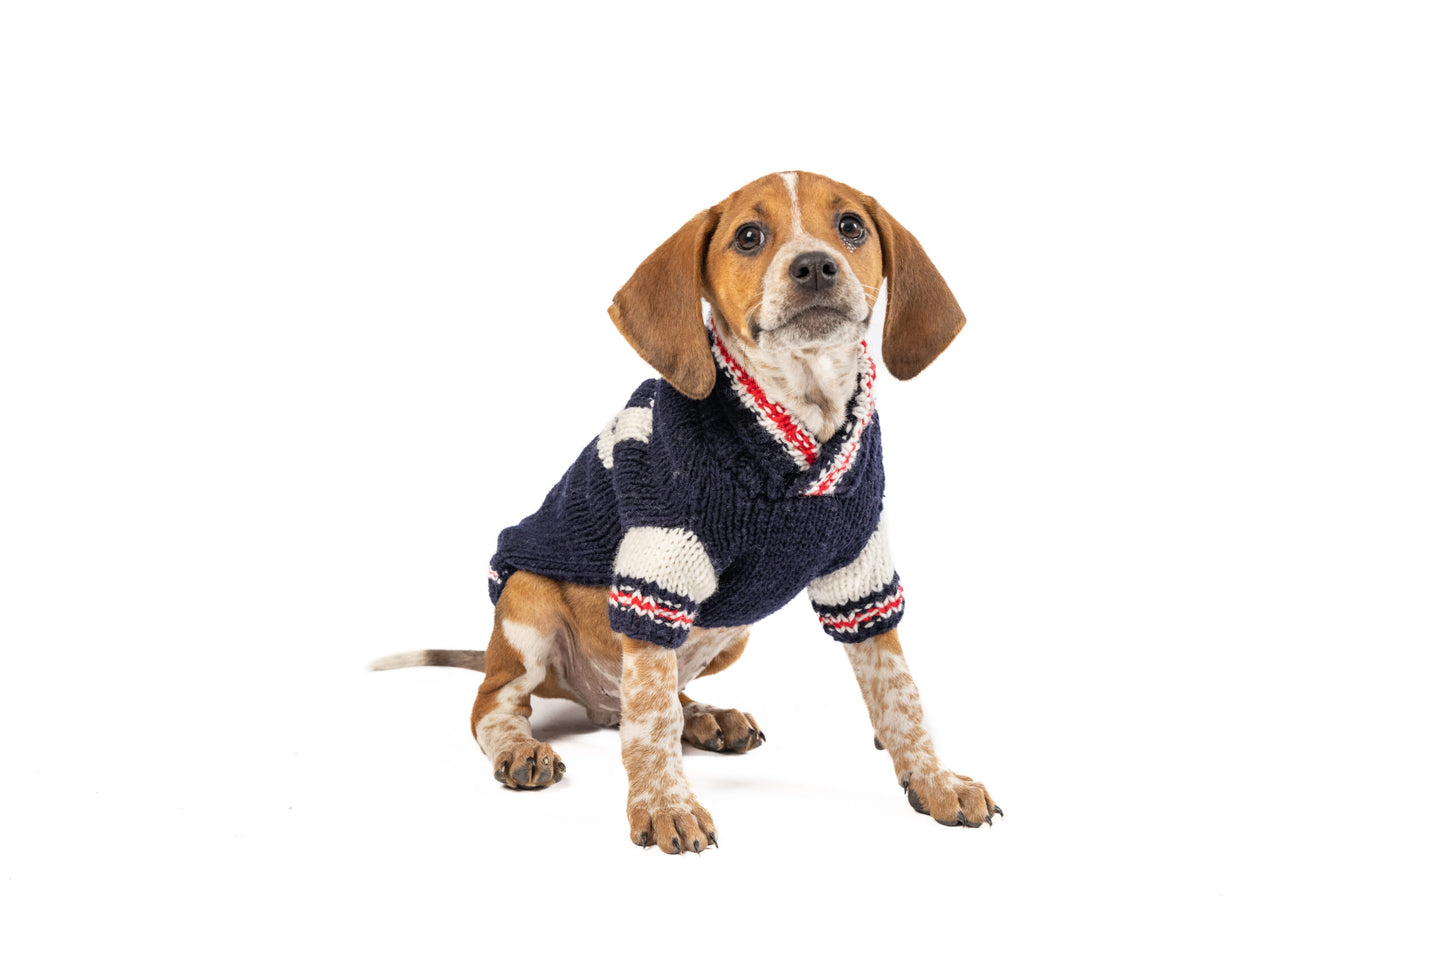 Varsity Dog Sweater - Trendy Dog Boutique